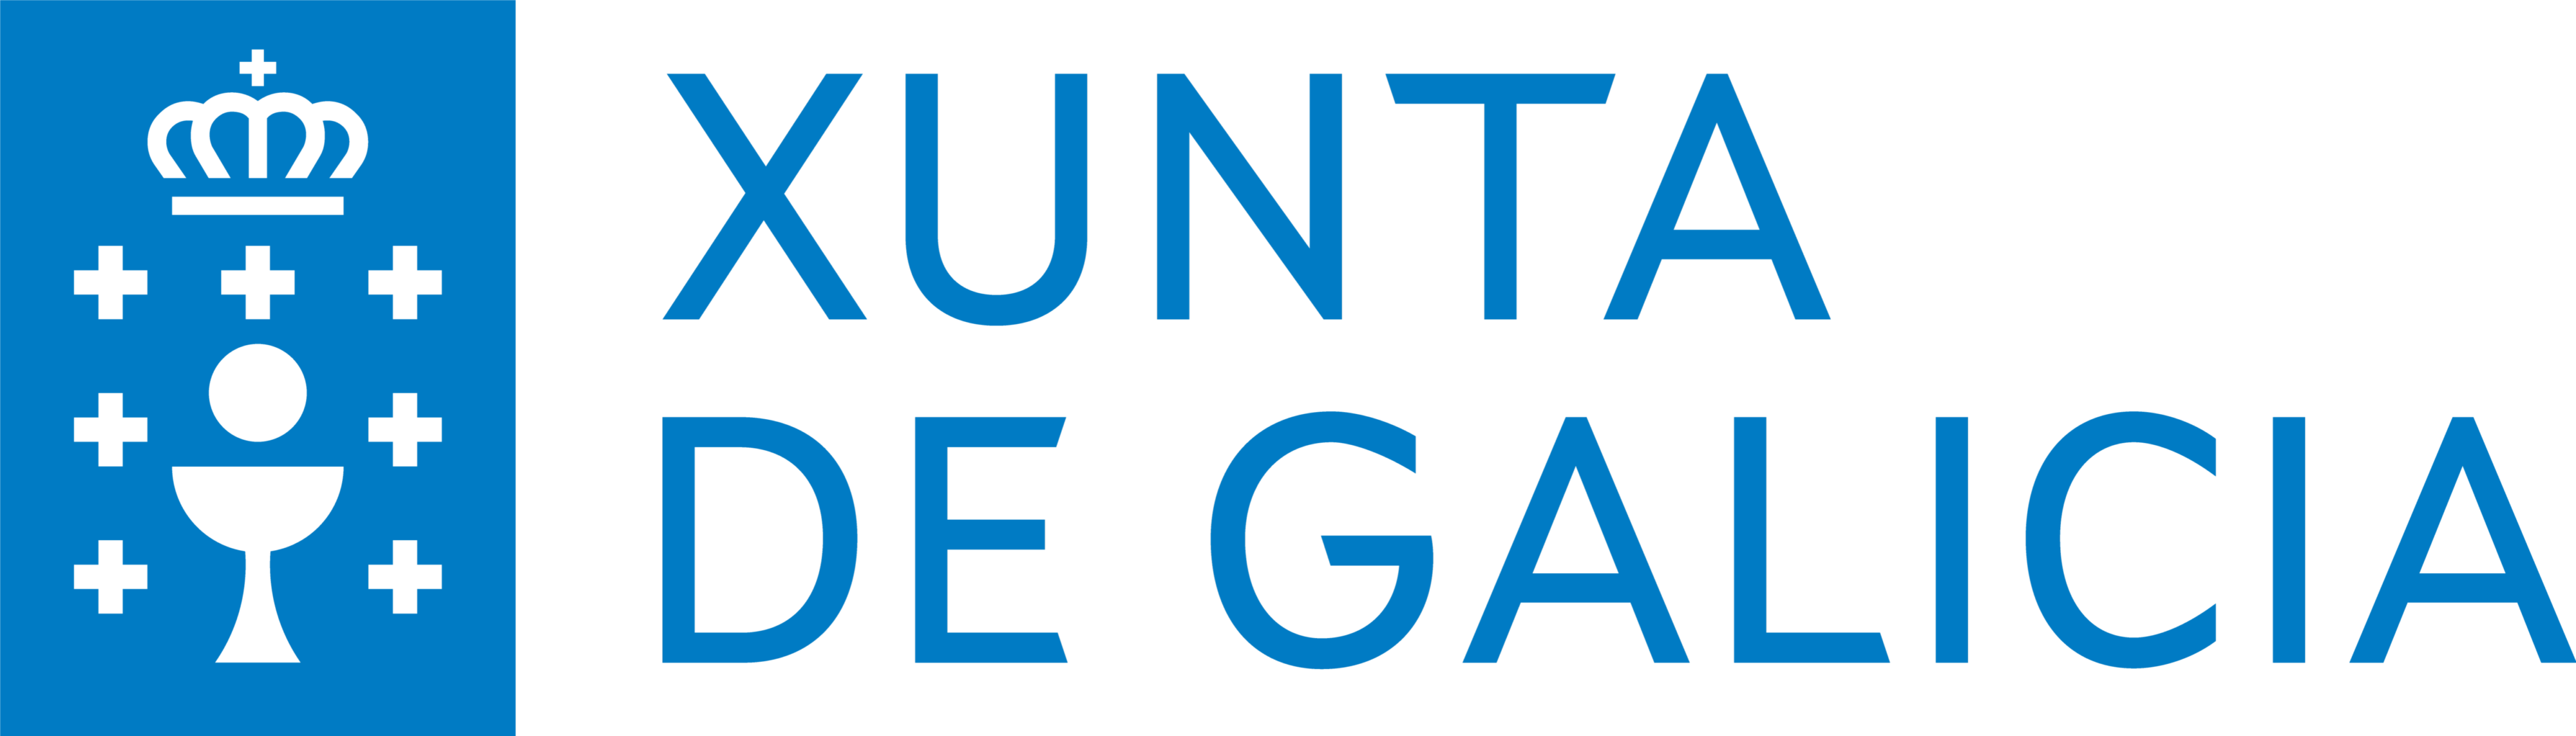 Logotipo oficial de la Xunta de Galicia